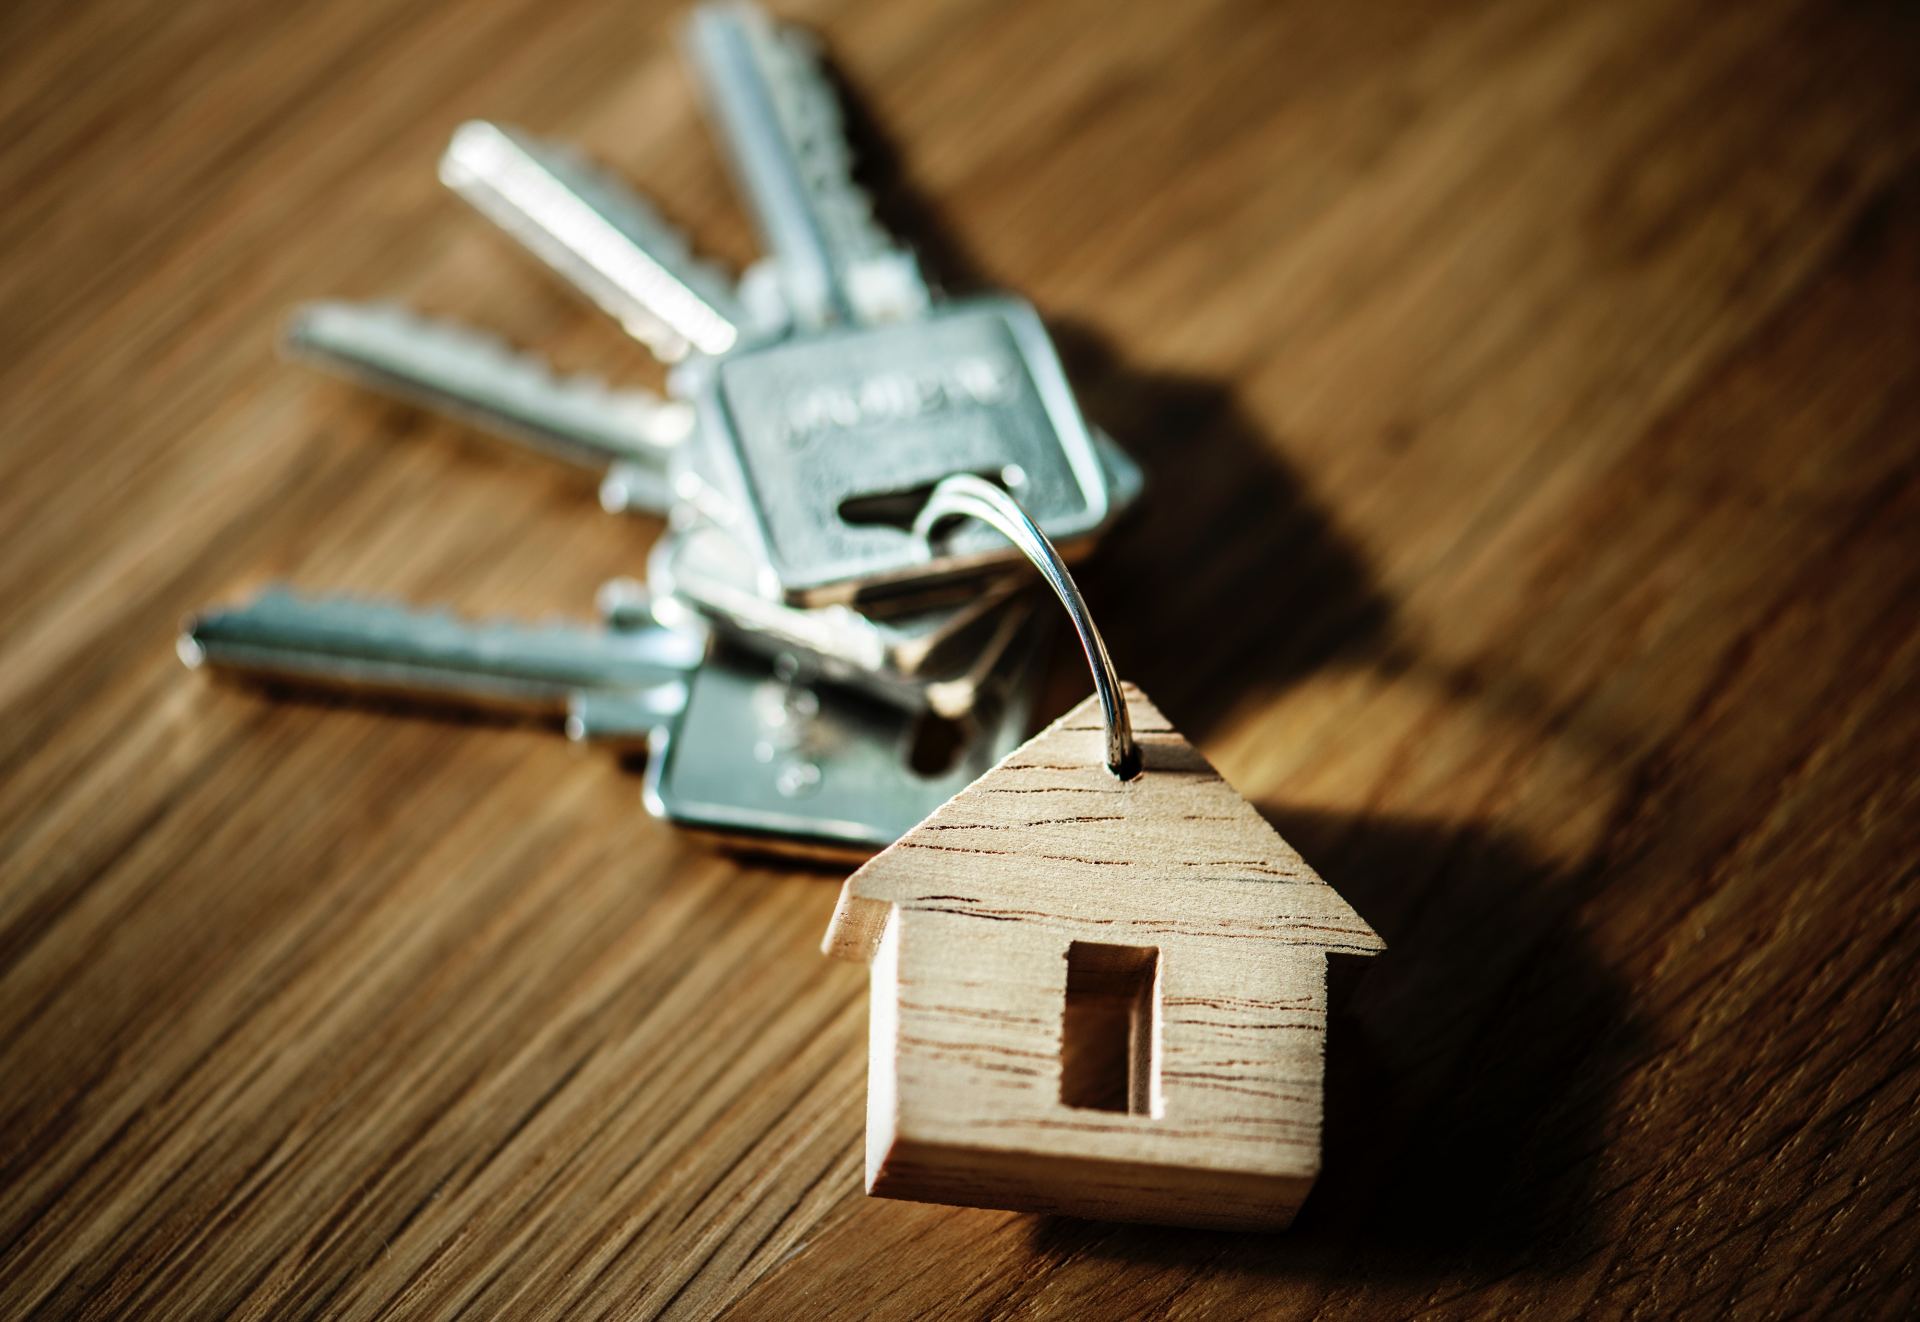 keys with a house-shaped keychain